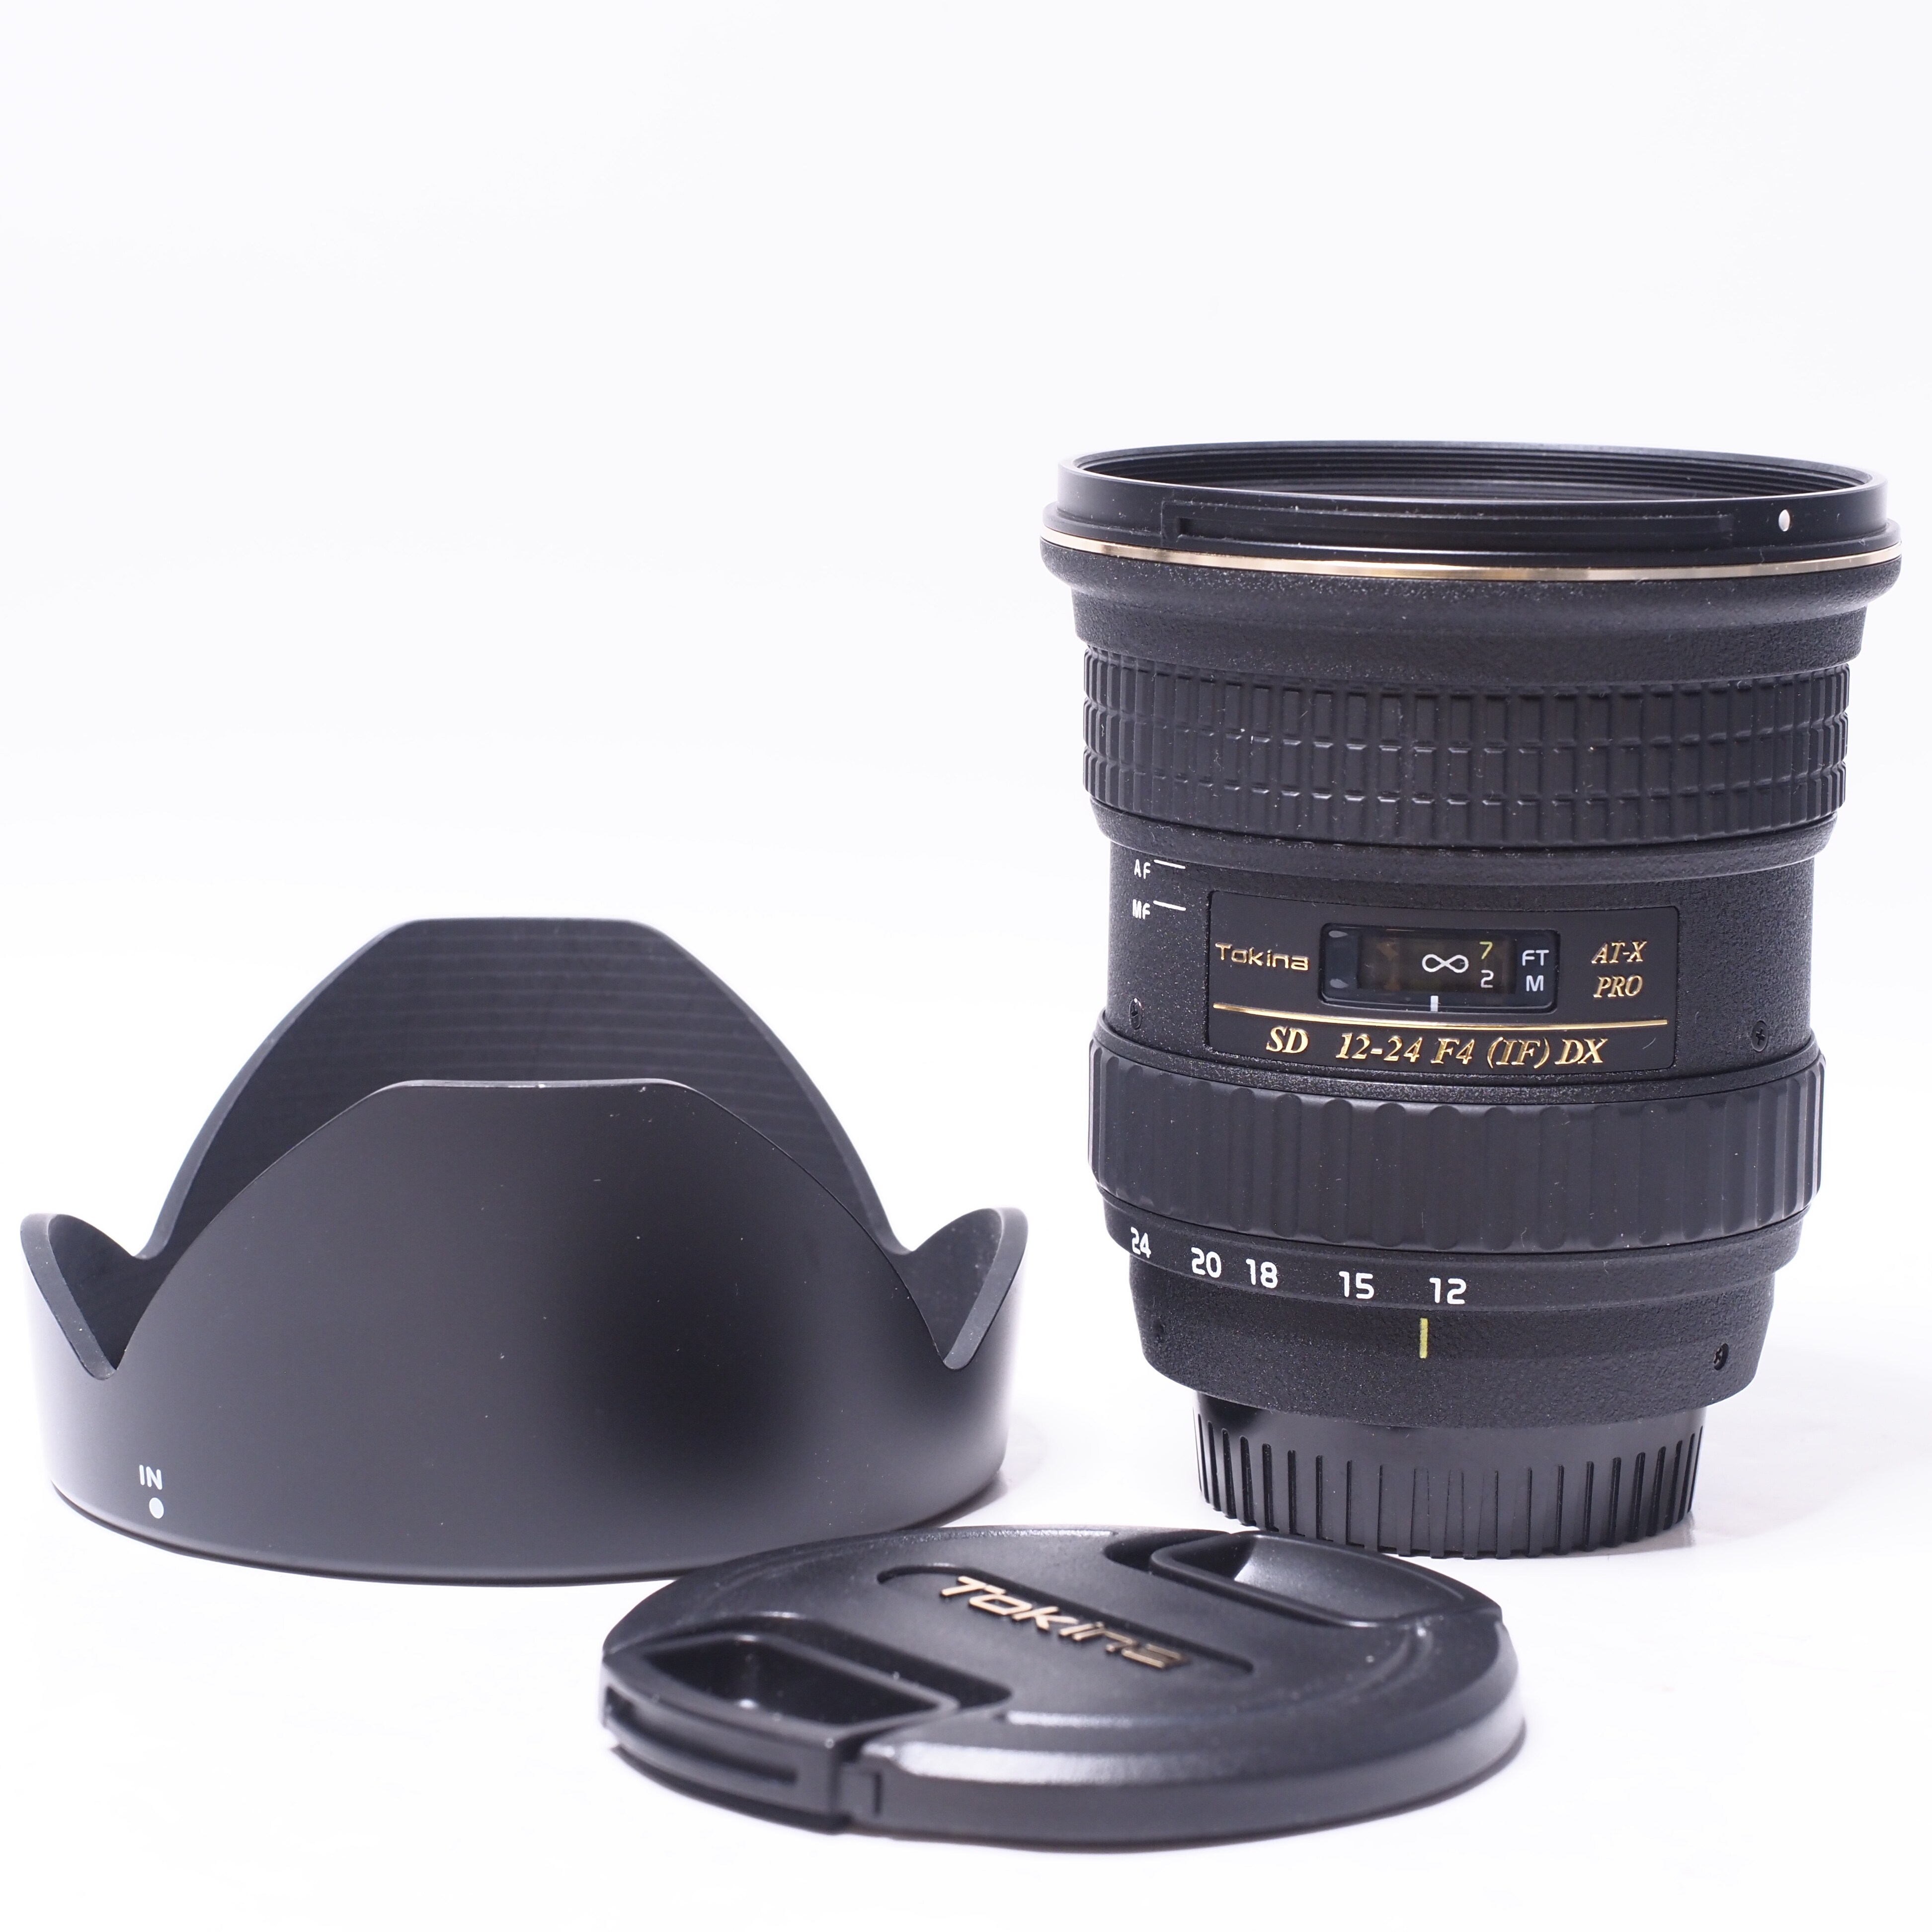 Tokina AT-X 12-24mm f/4 (IF) DX för Nikon - Begagnad